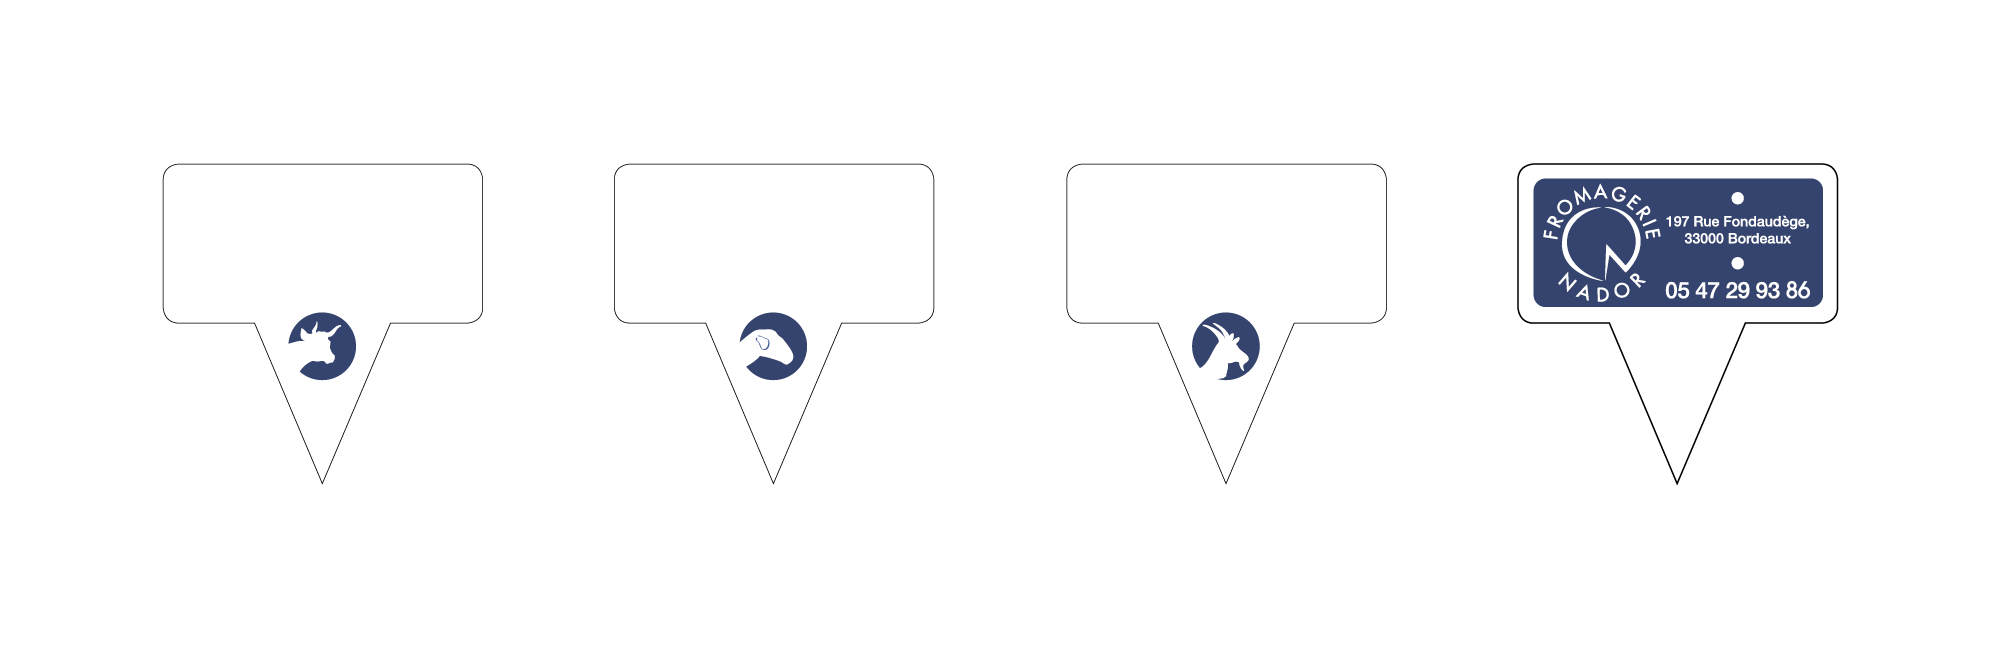 Visuels pics plateaux blancs personnalisés avec coordonnées de la fromagerie nador